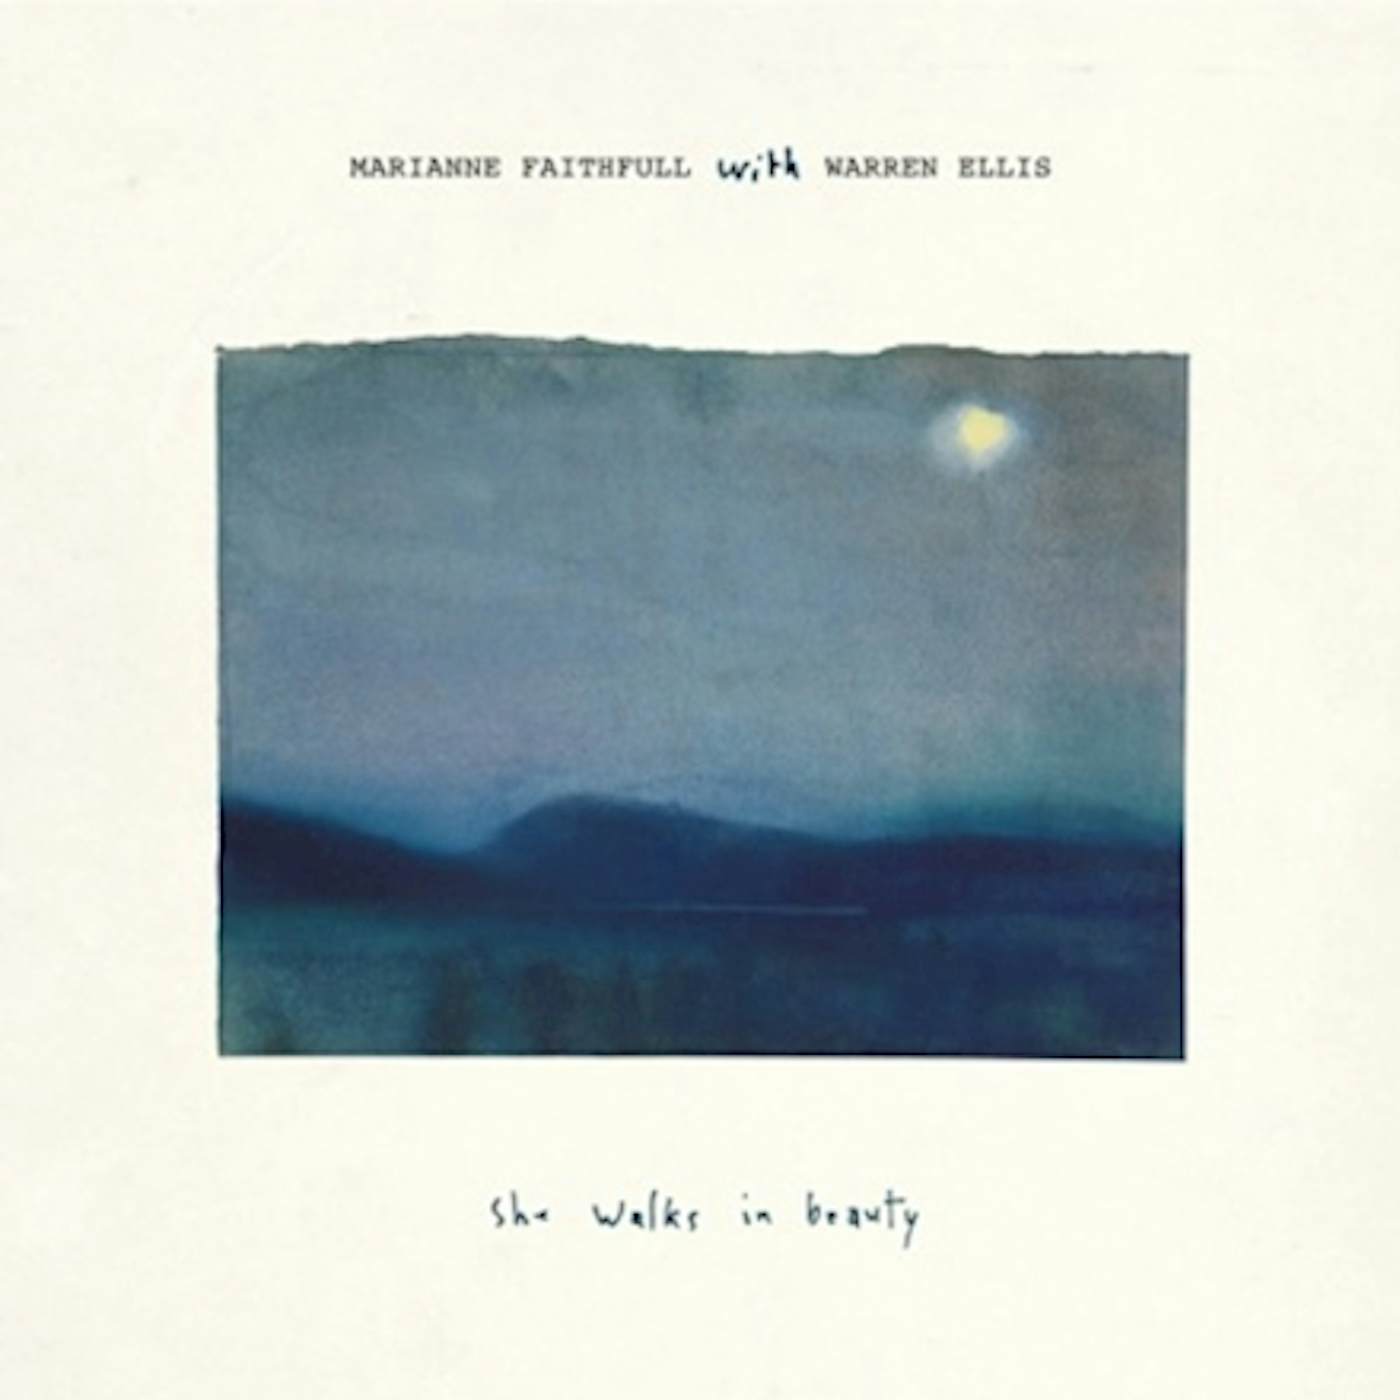 Marianne Faithfull She Walks in Beauty (with Warren Ellis) Vinyl Record